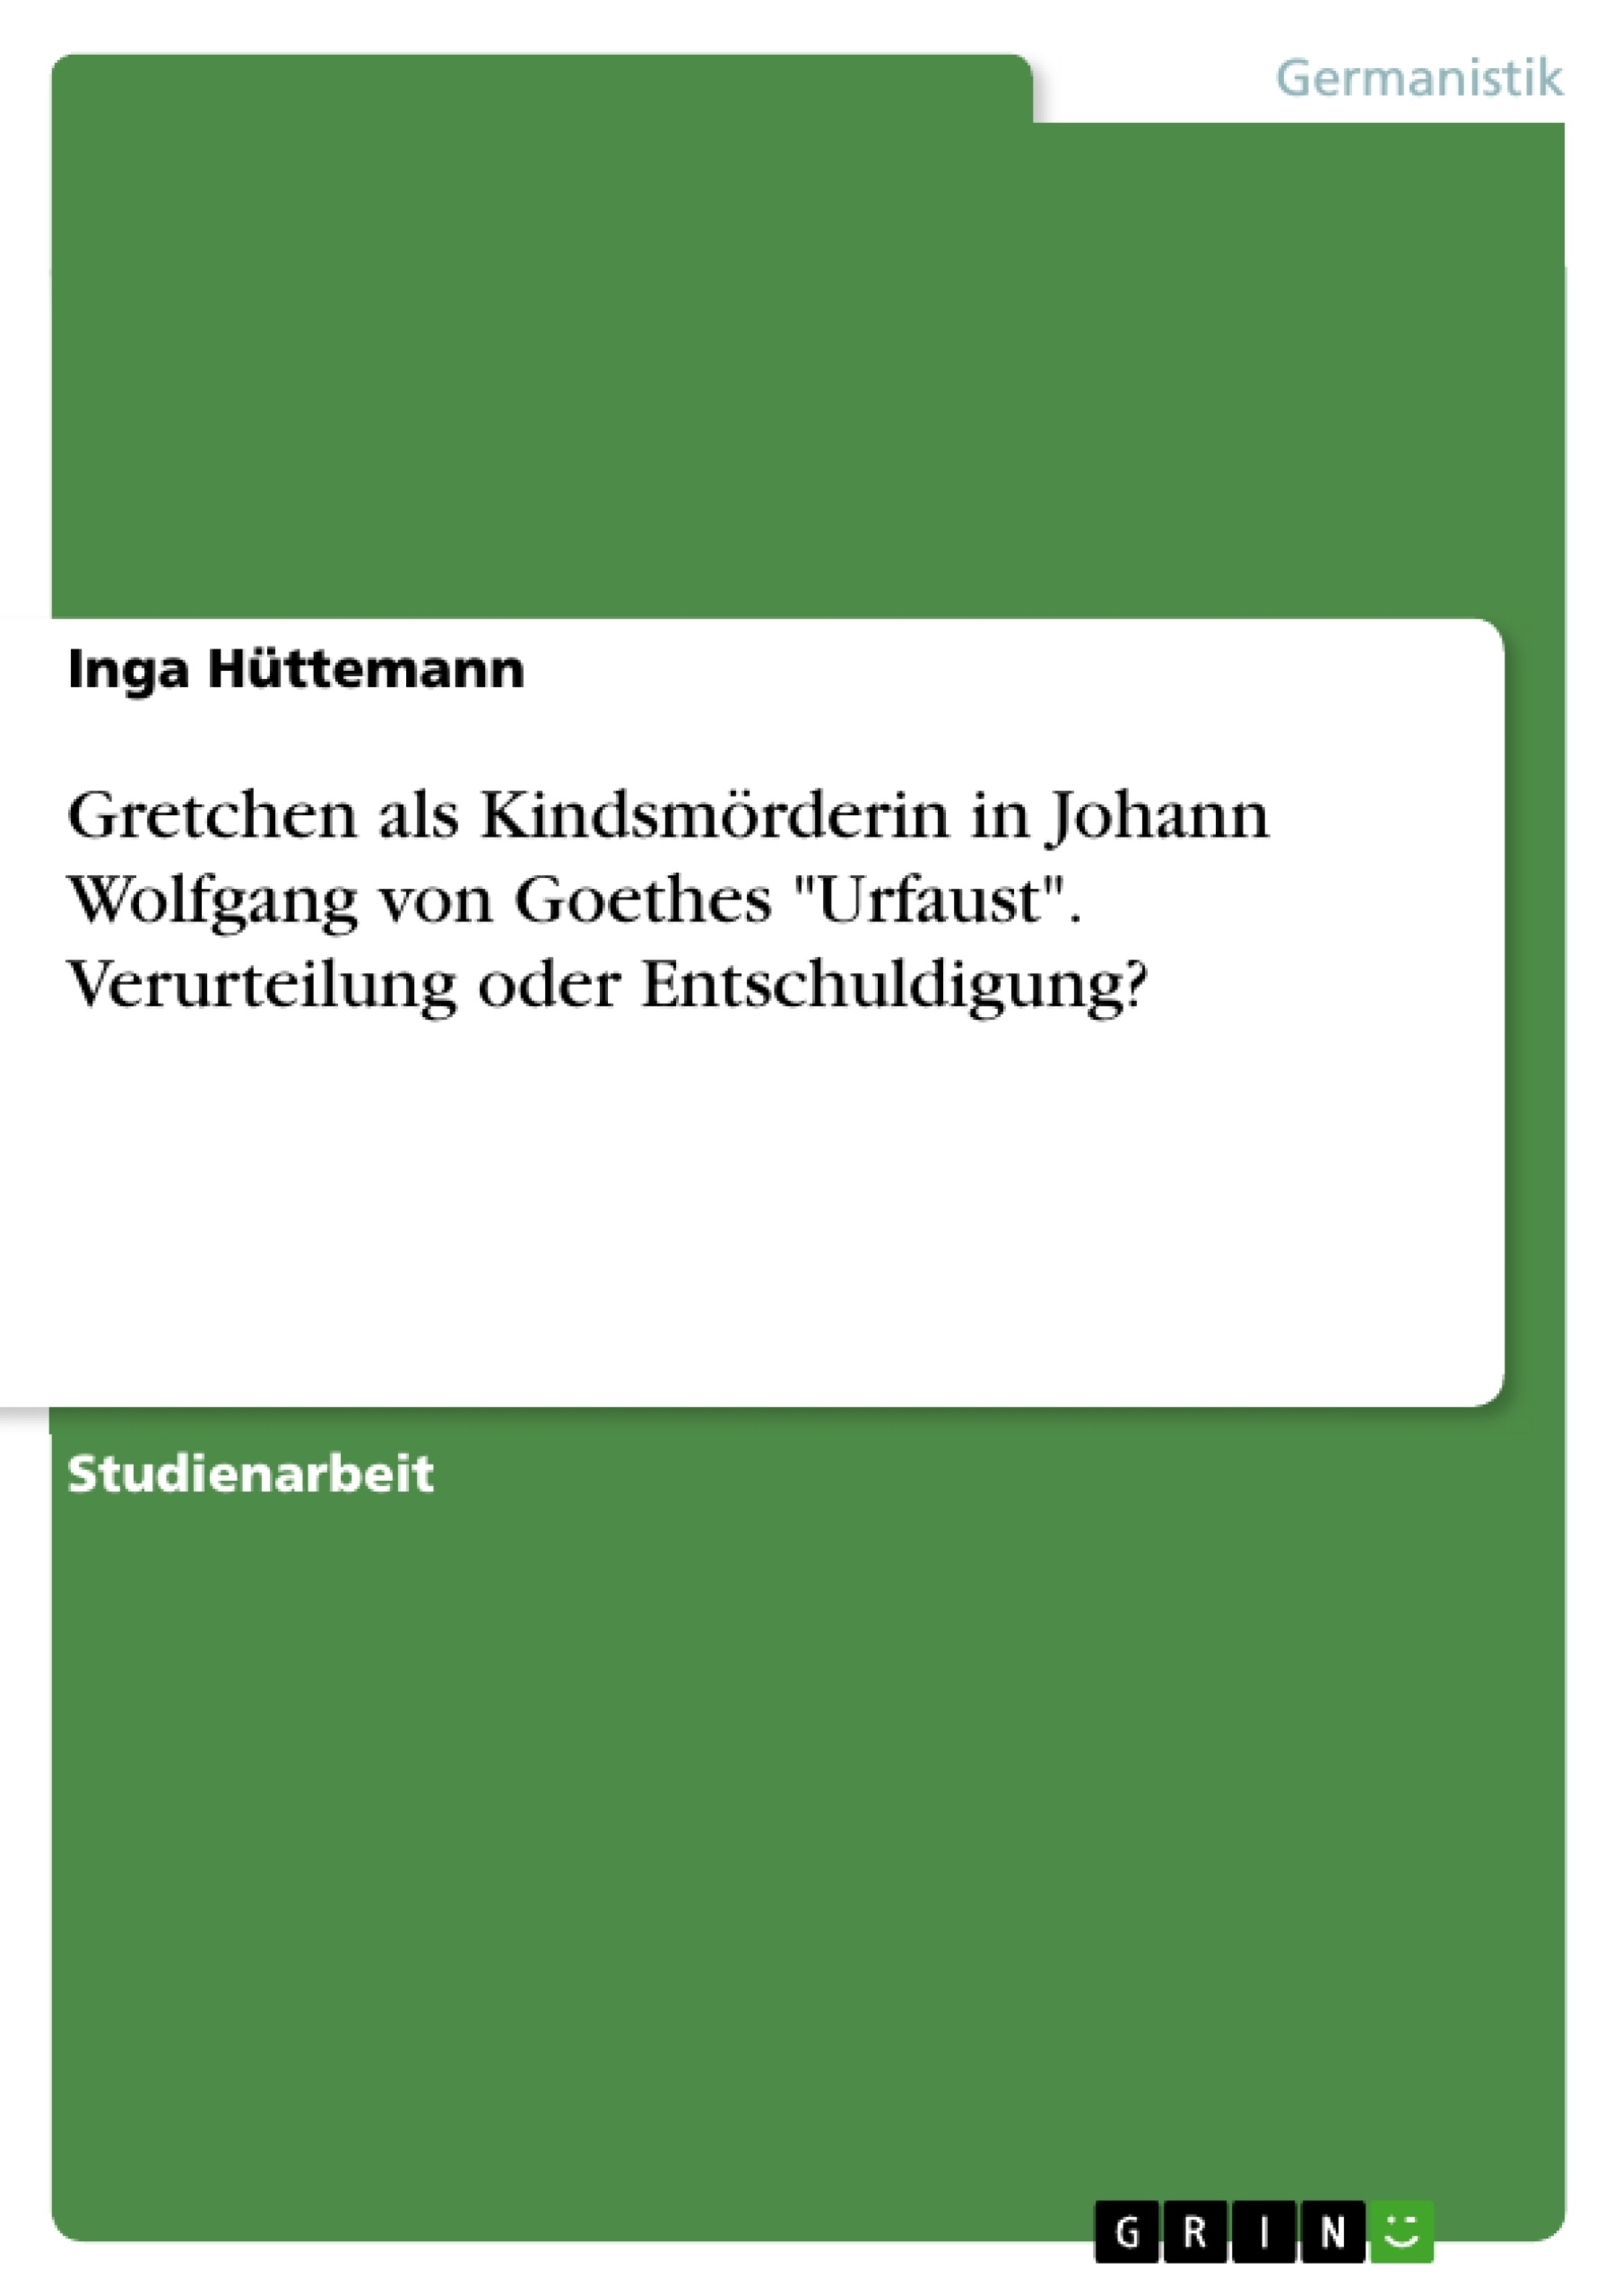 Title: Gretchen als Kindsmörderin in Johann Wolfgang von Goethes "Urfaust". Verurteilung oder Entschuldigung?